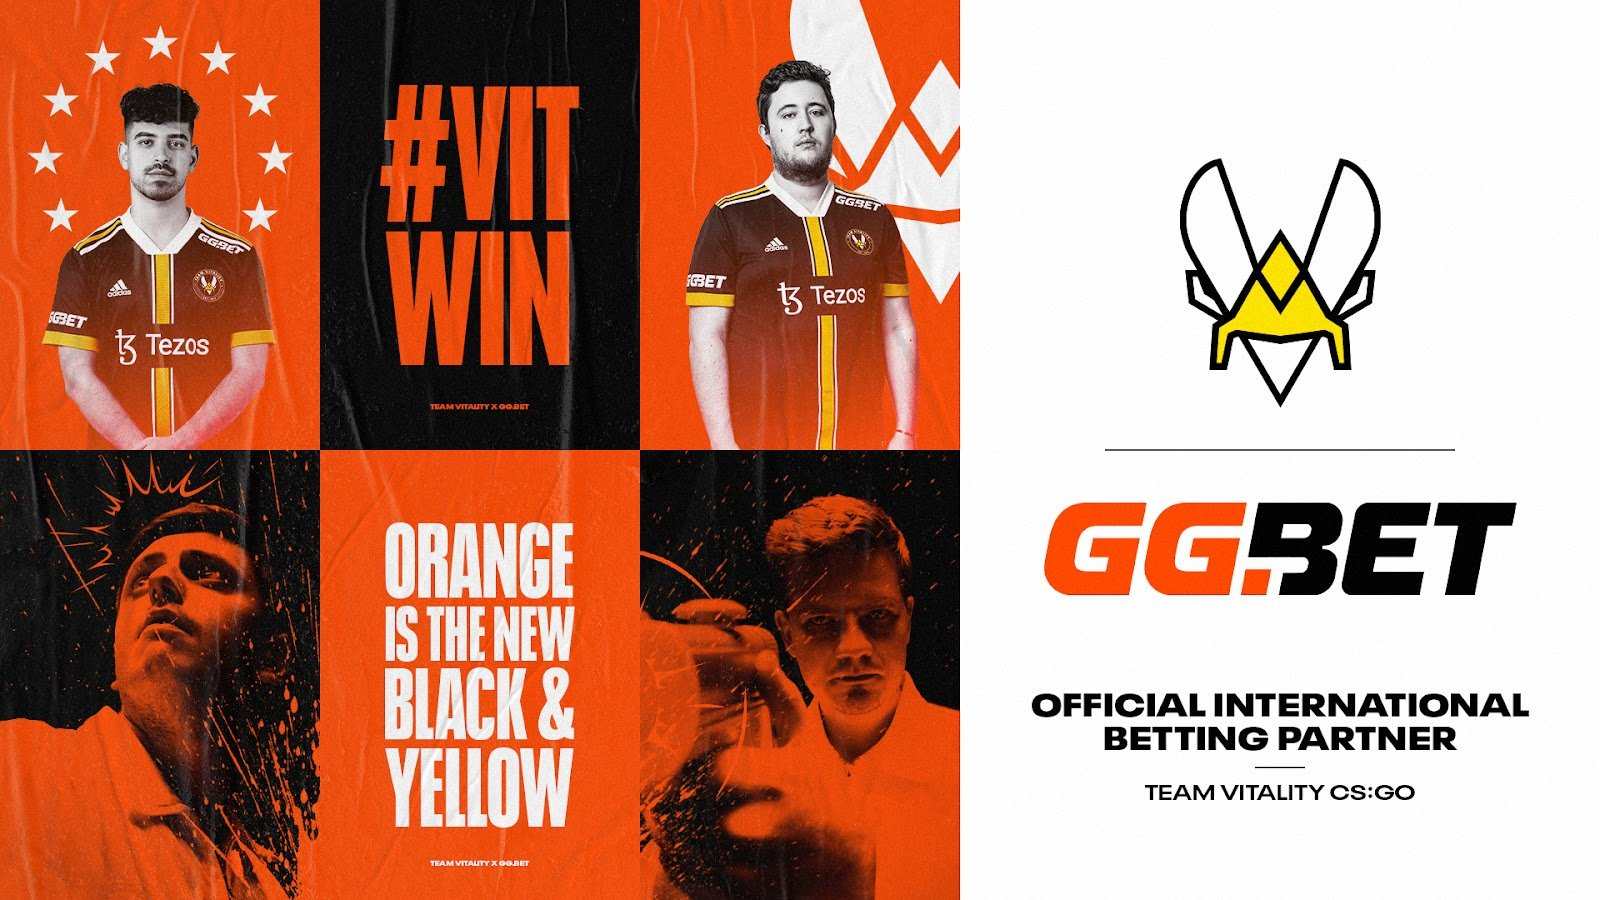 Team Vitality CS GO partnership with GGBET